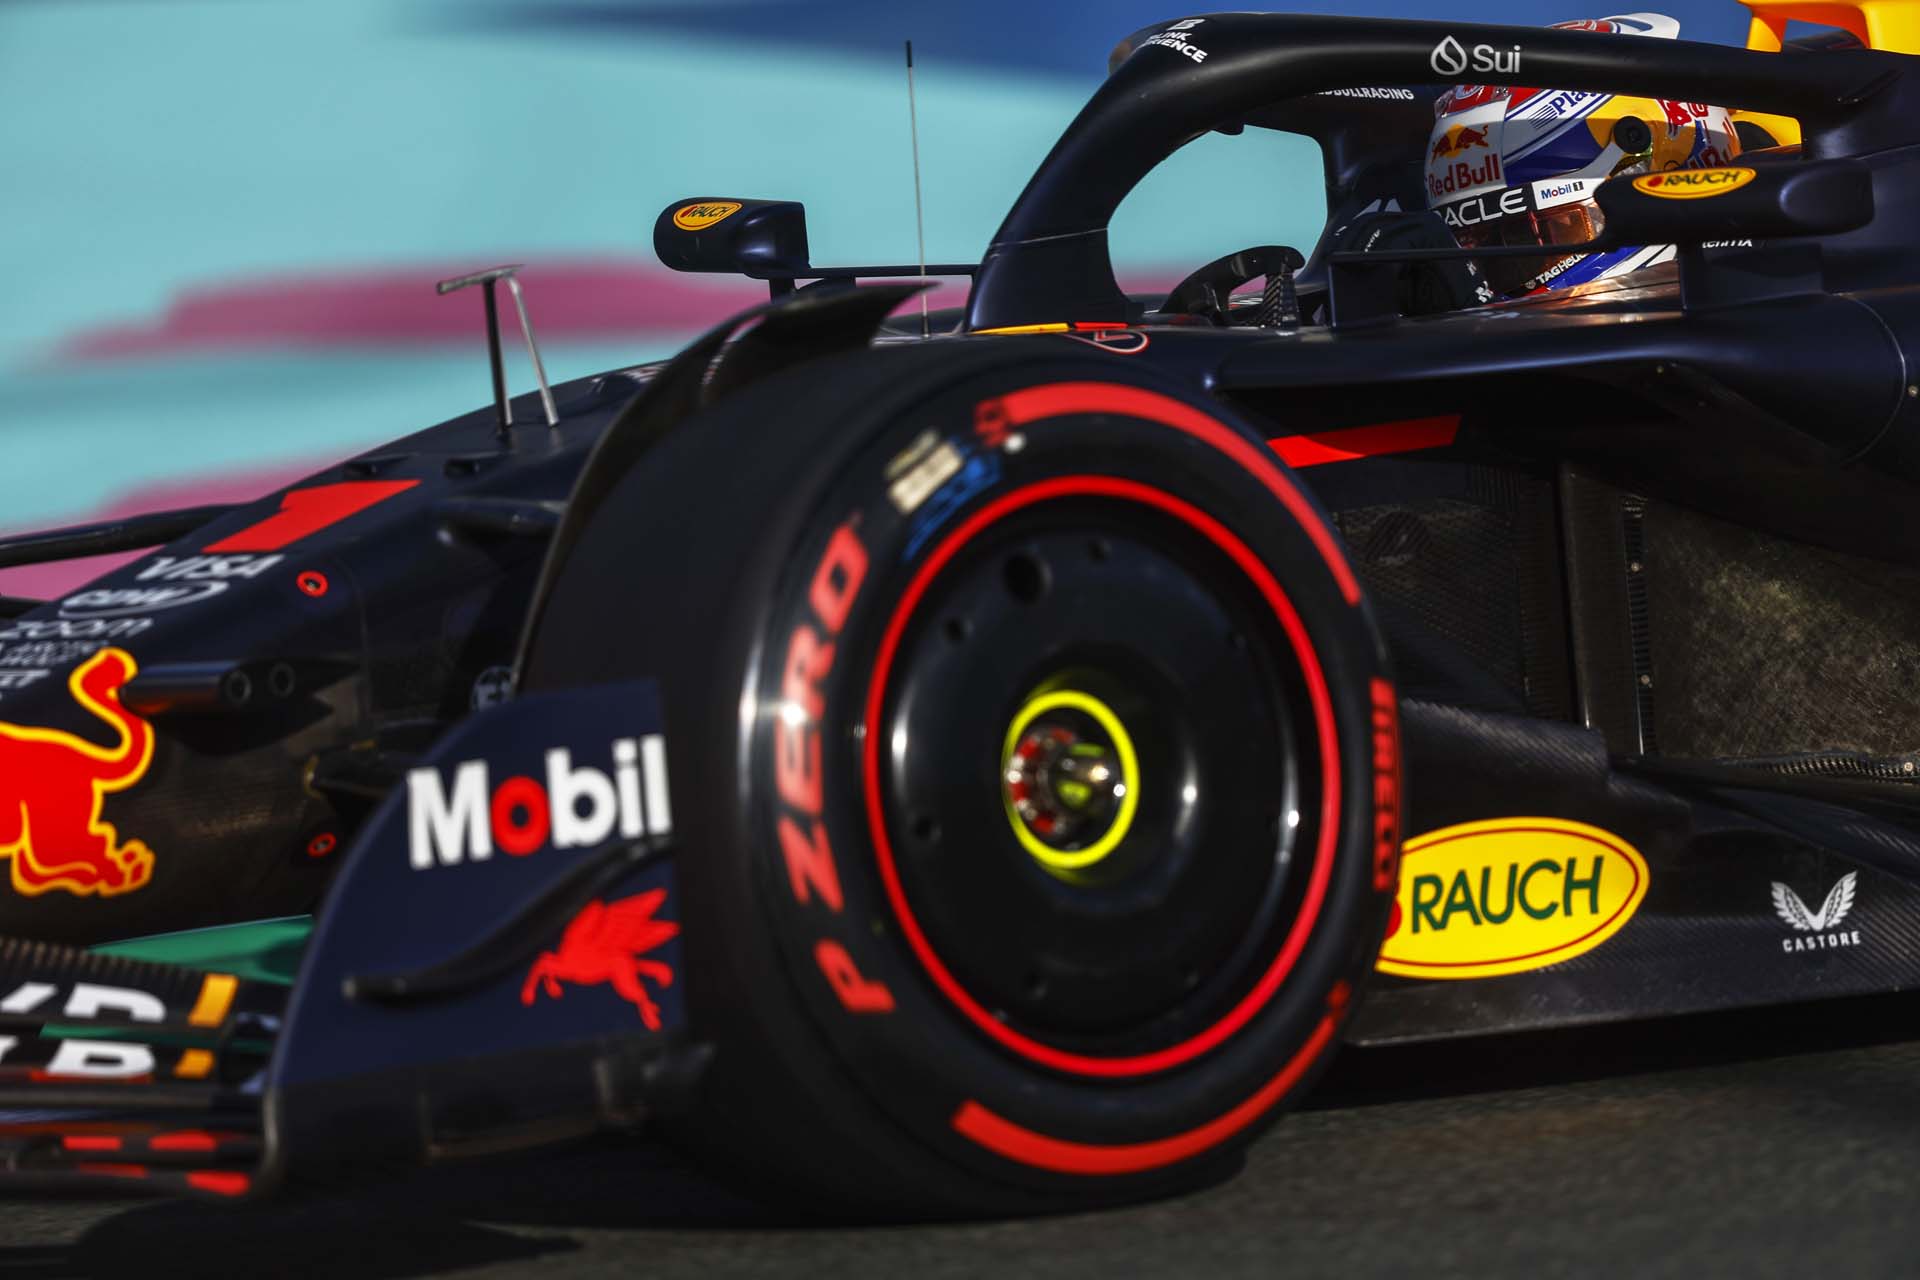 Verstappen aggódik a Pirelli döntése miatt a Melbourne-i verseny előtt